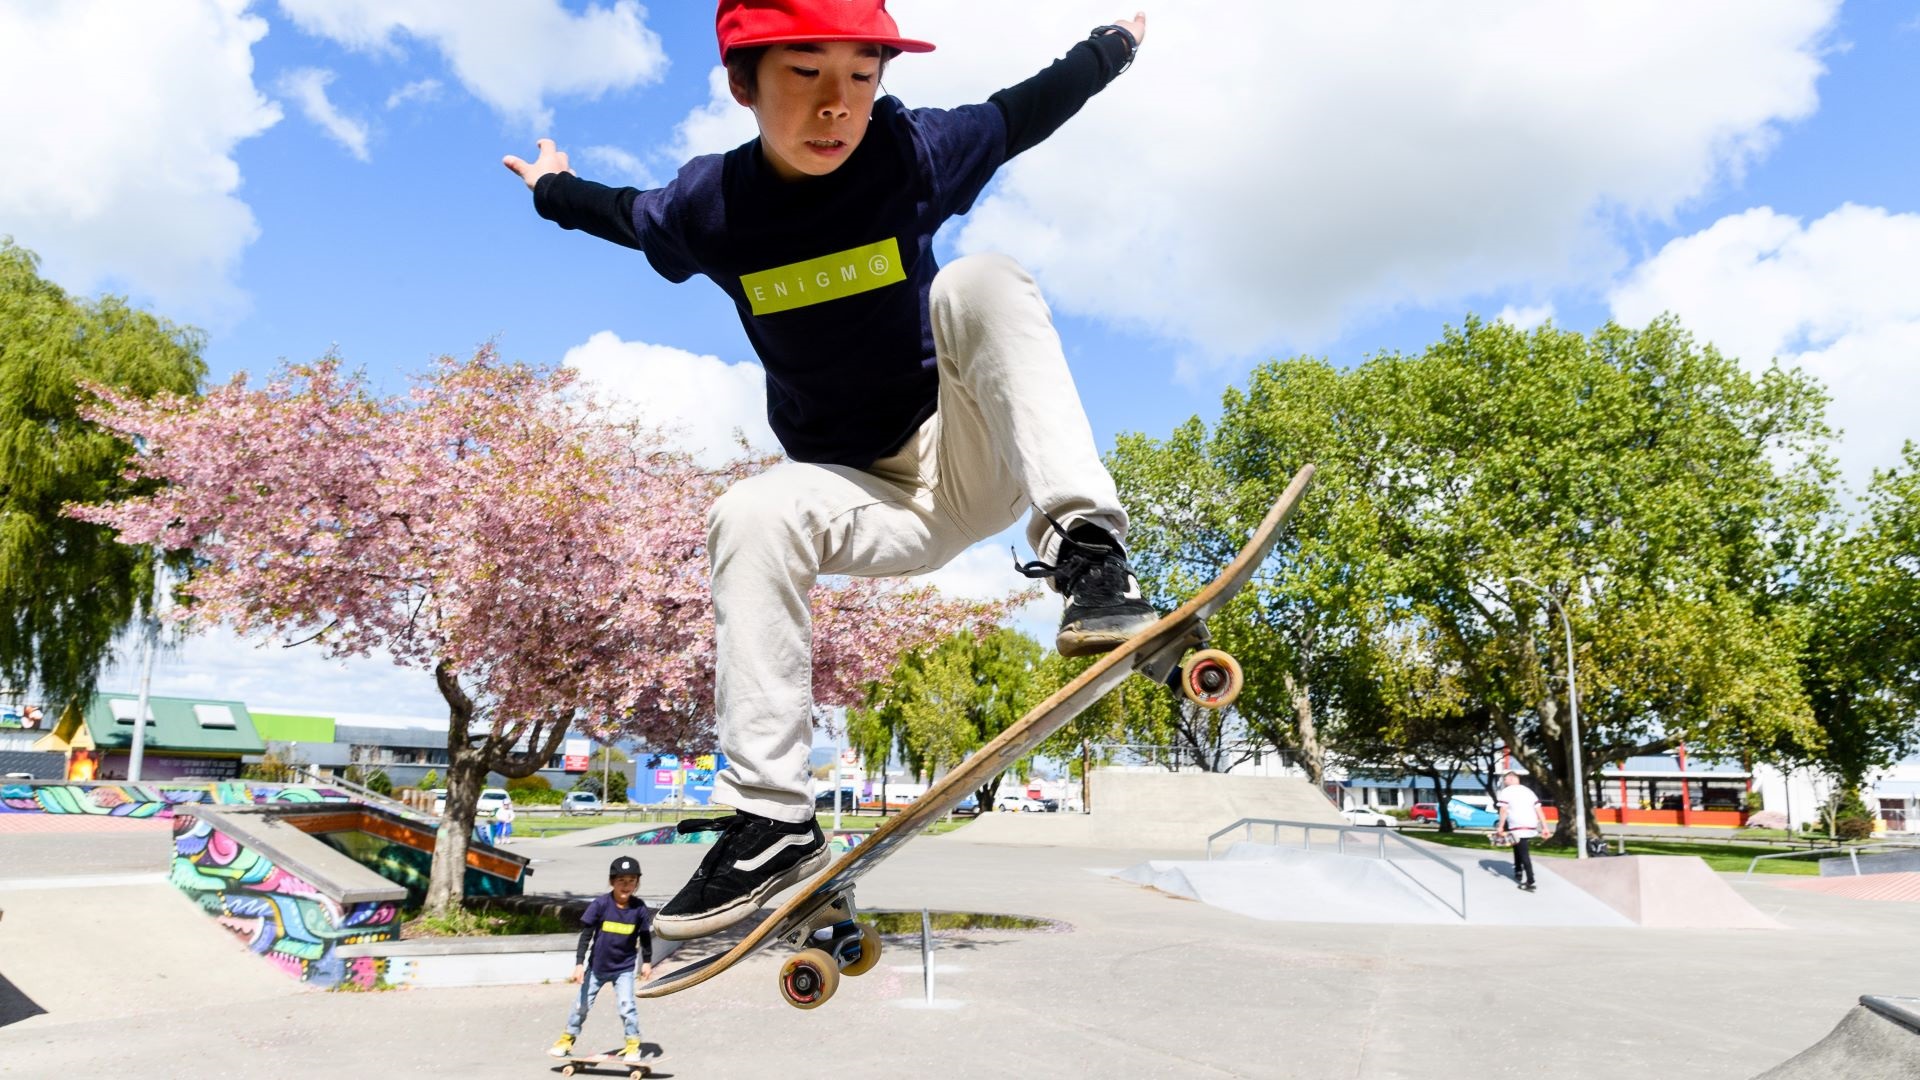 Photo shows skateboarding in full flight on one of the skatepark jumps.